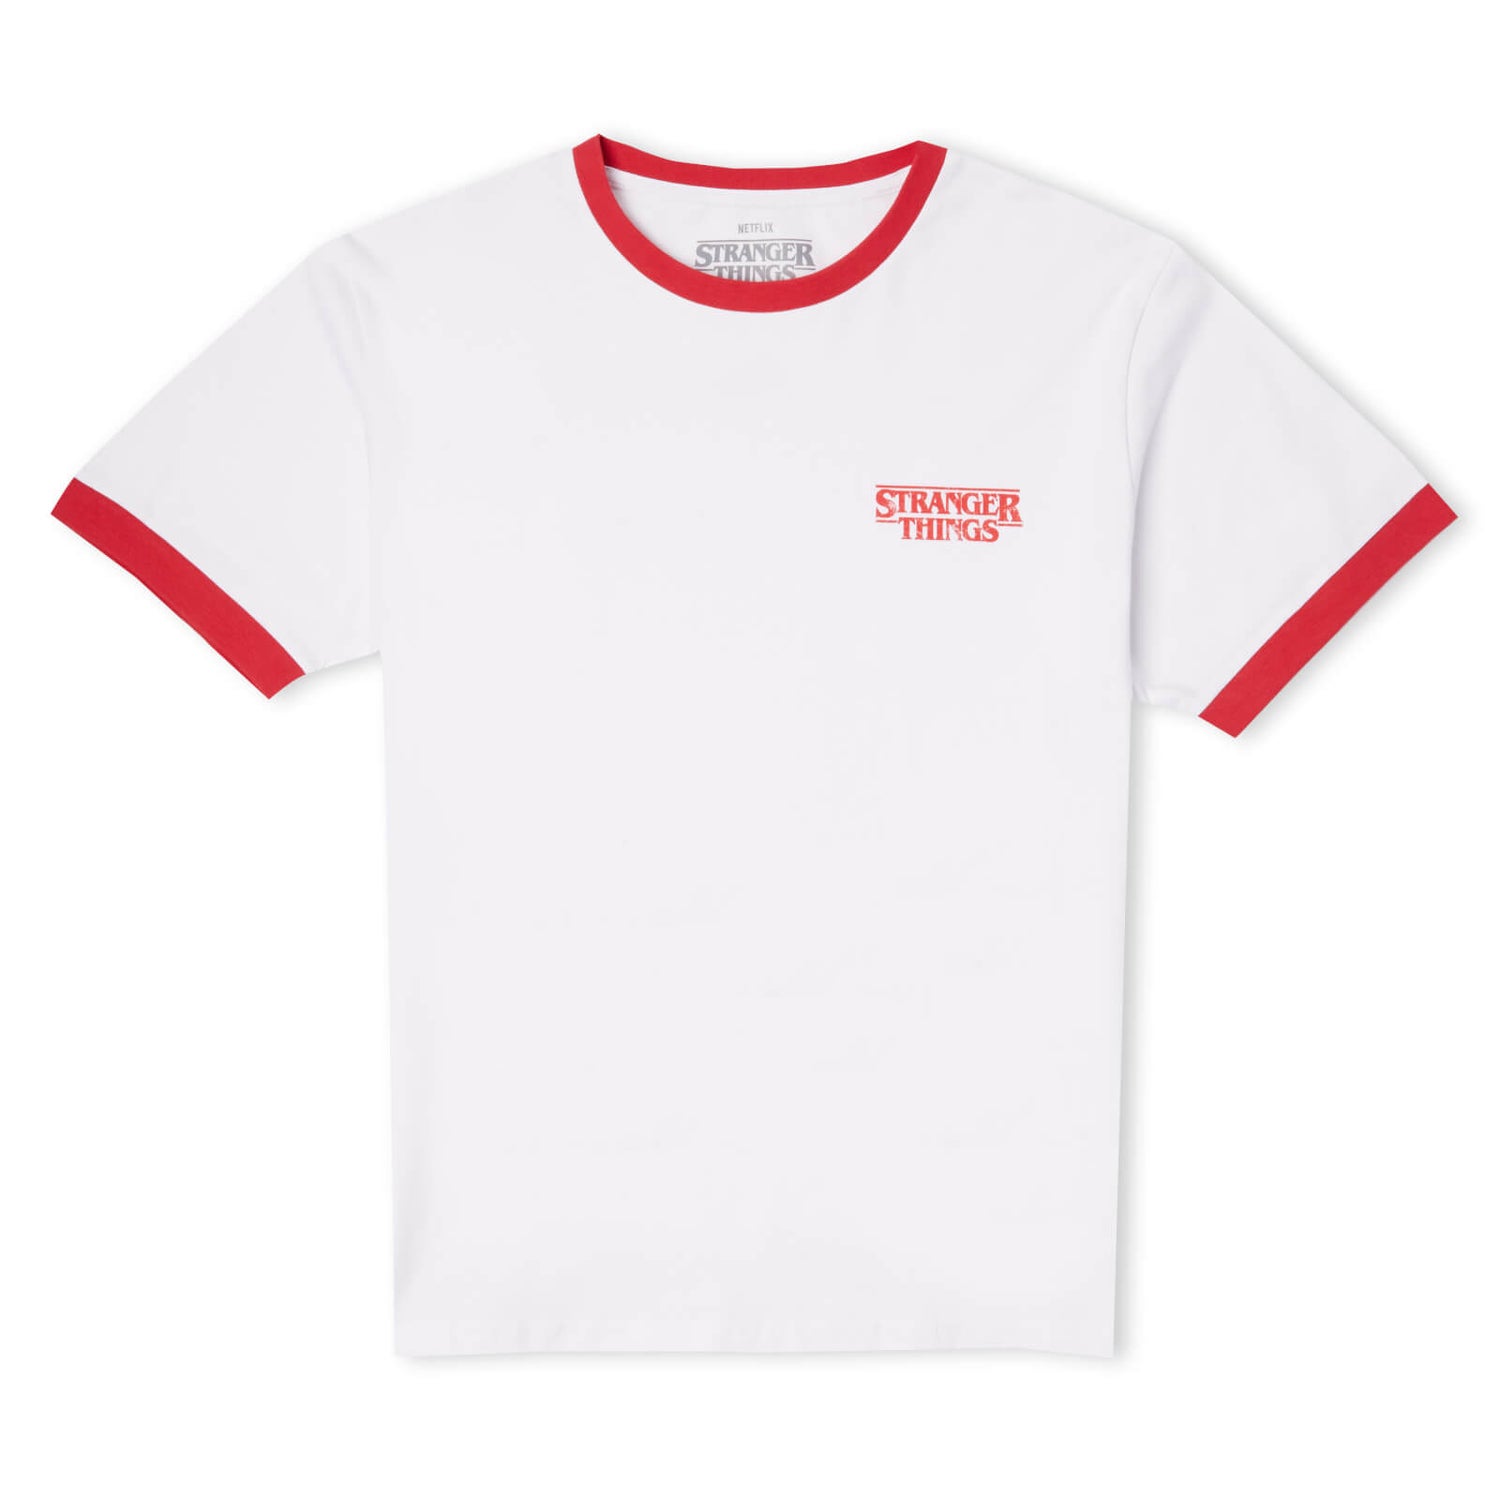 Stranger Things Biker Gang Unisex Ringer T-Shirt - White/Red